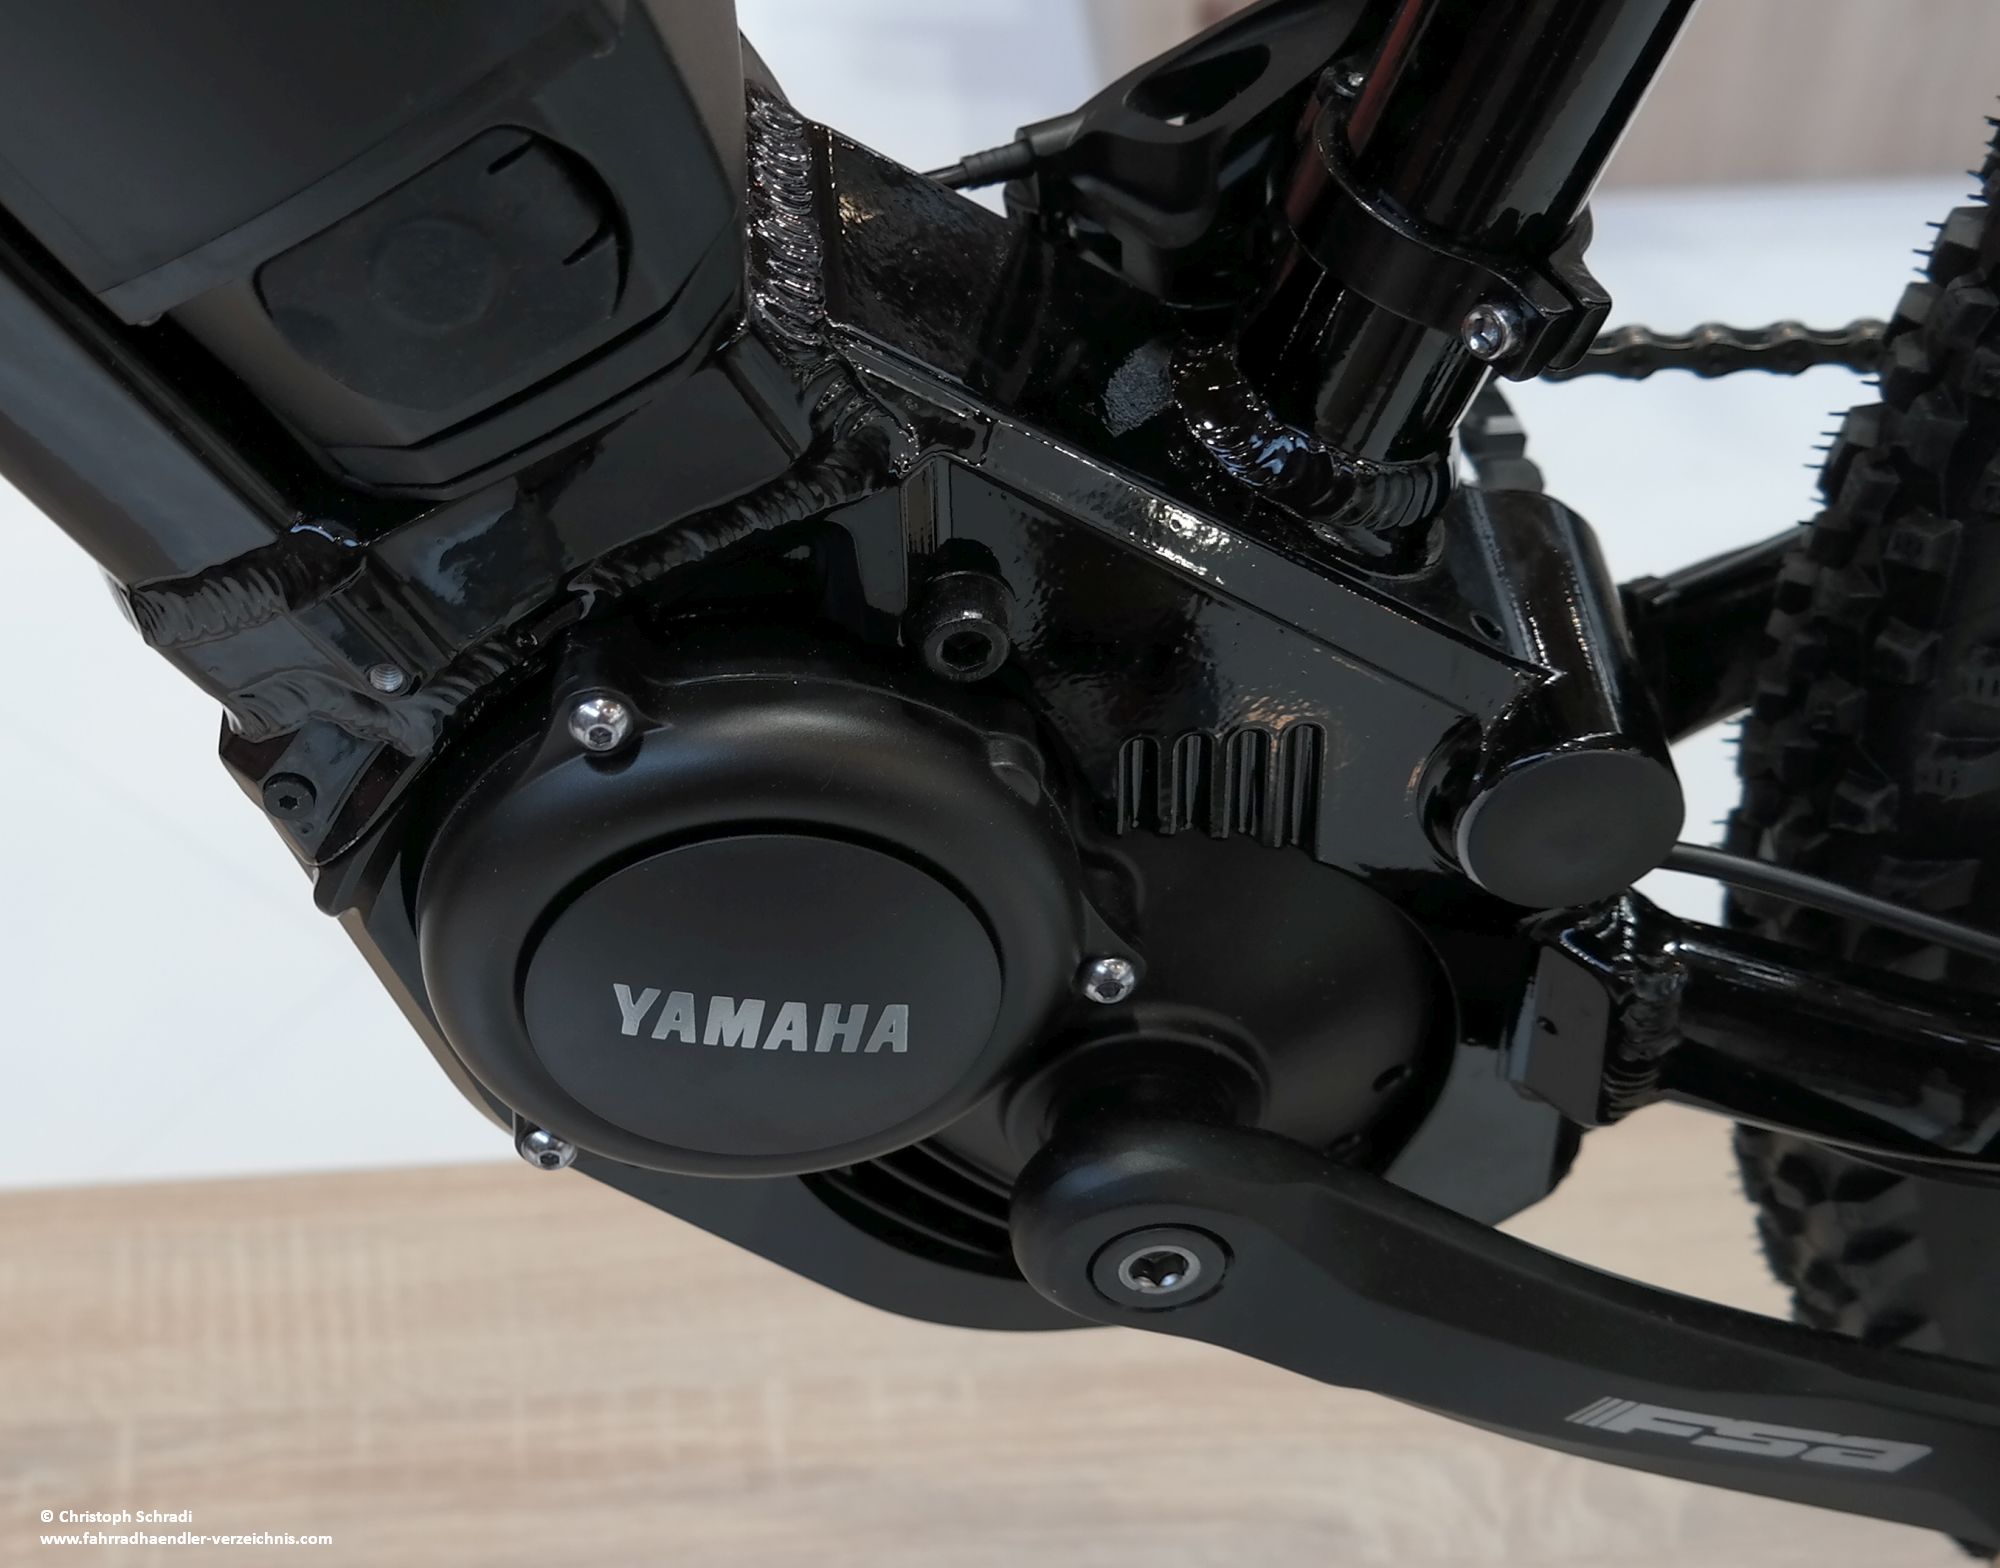 Yamaha ist seit einigen Jahren in Europa nicht nur mehr von den Motorrädern bekannt - auch am E-Bike etwa bei Haibike, Winora, Sinus, Wheeler, Gepida kommen Yamaha Mittelmotoren zum Einsatz